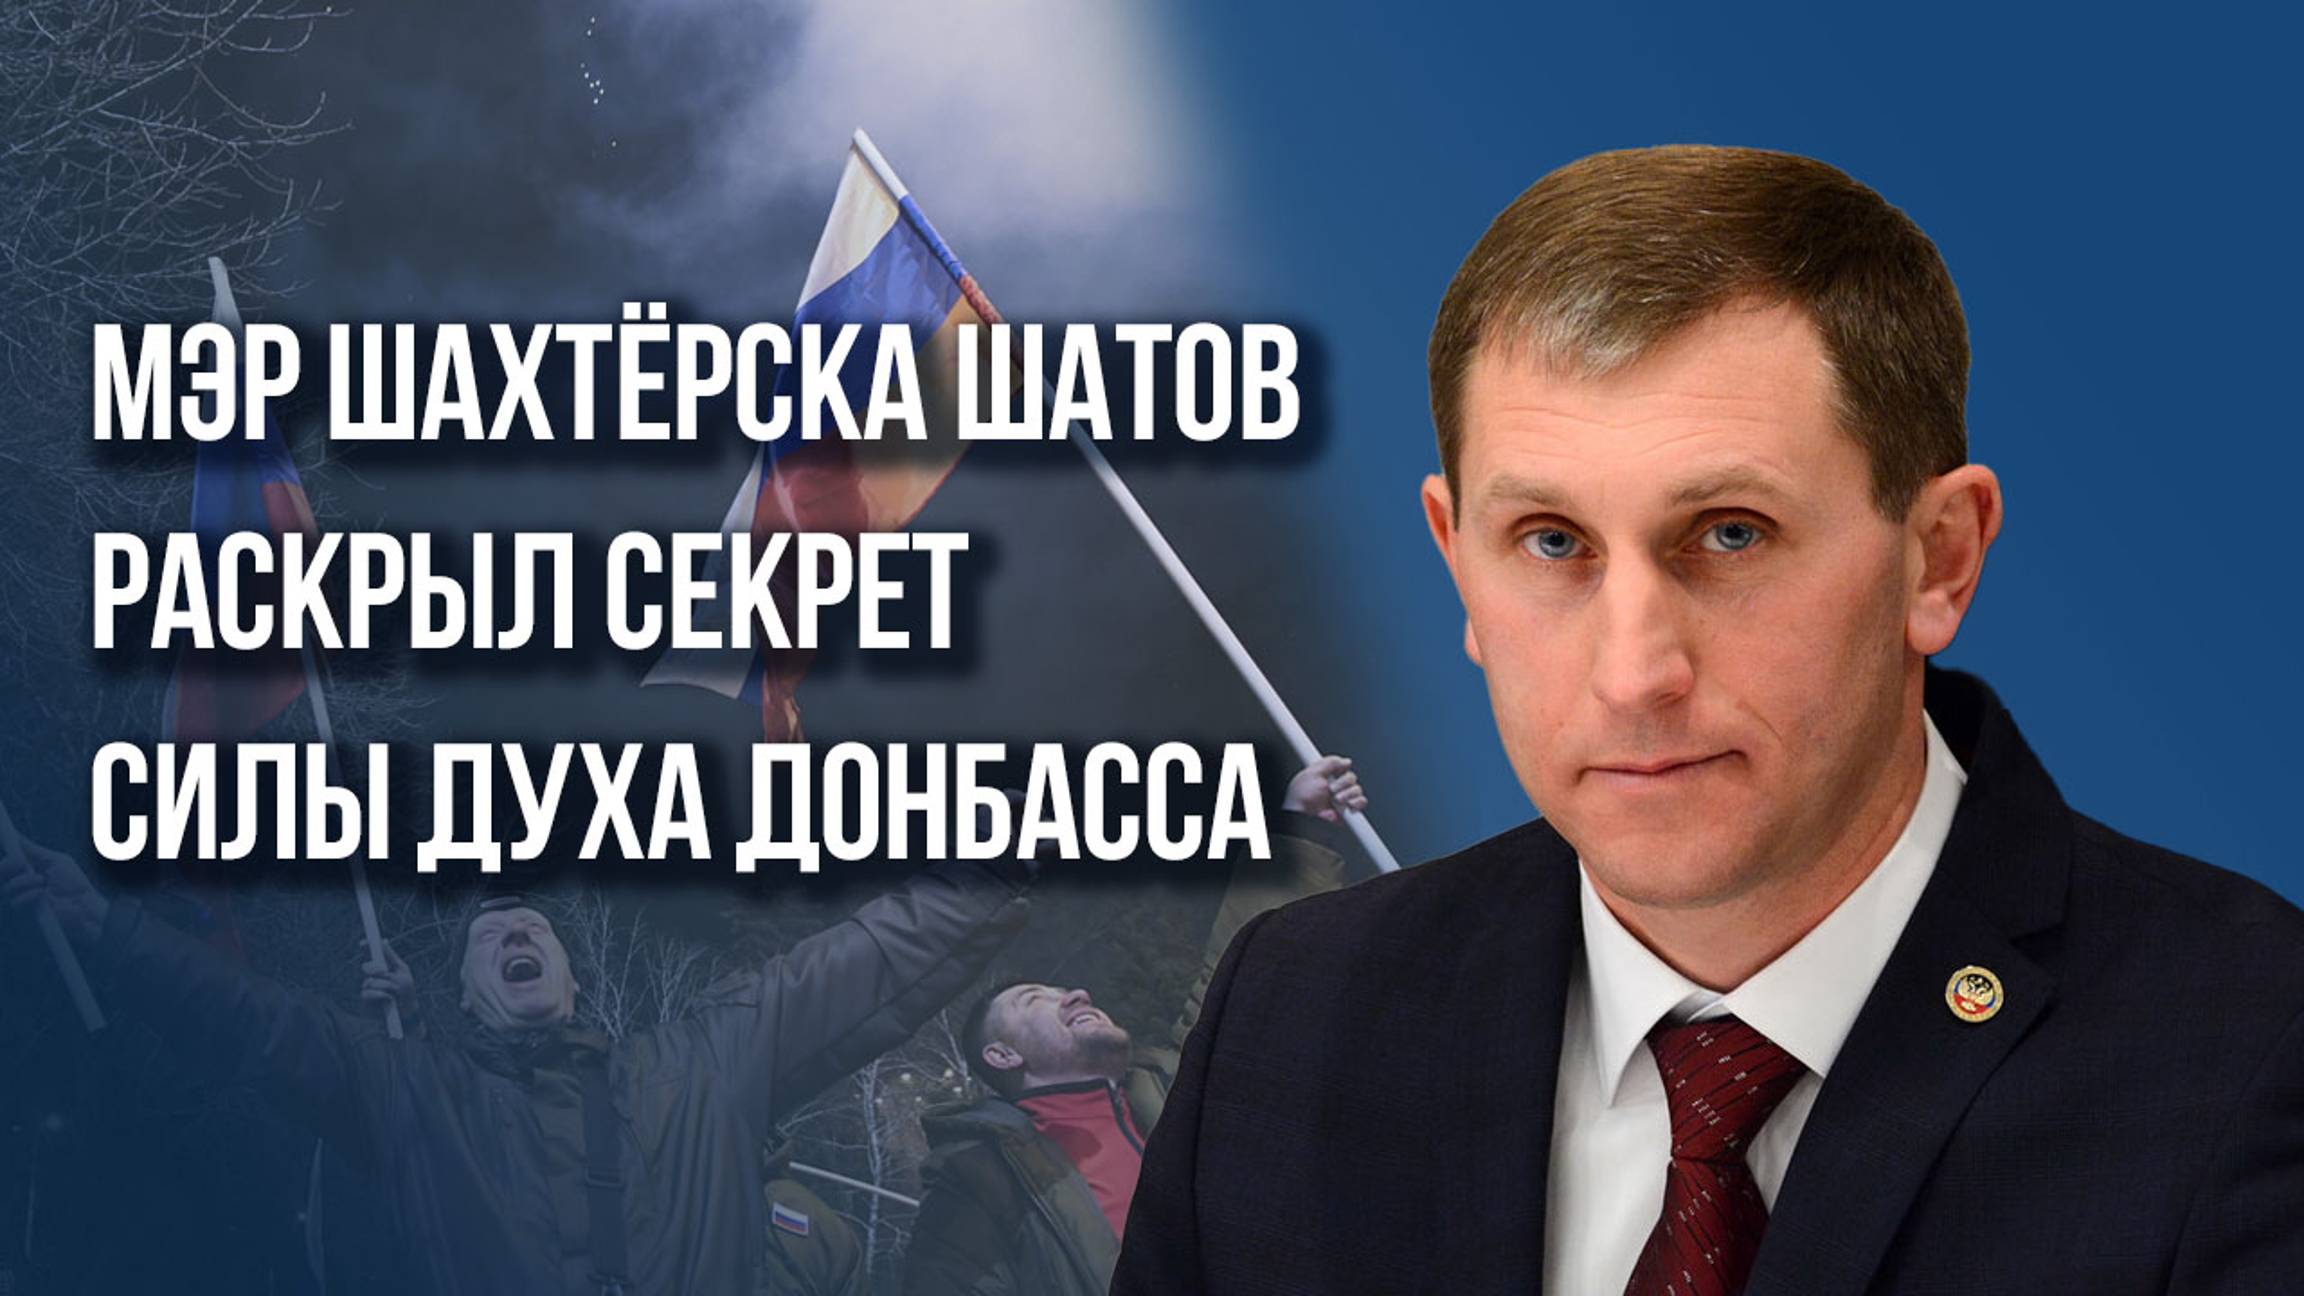 Испытания нас закалили: мэр Шахтёрска Шатов о том, в чём сила людей Донбасса, СВО и большой России